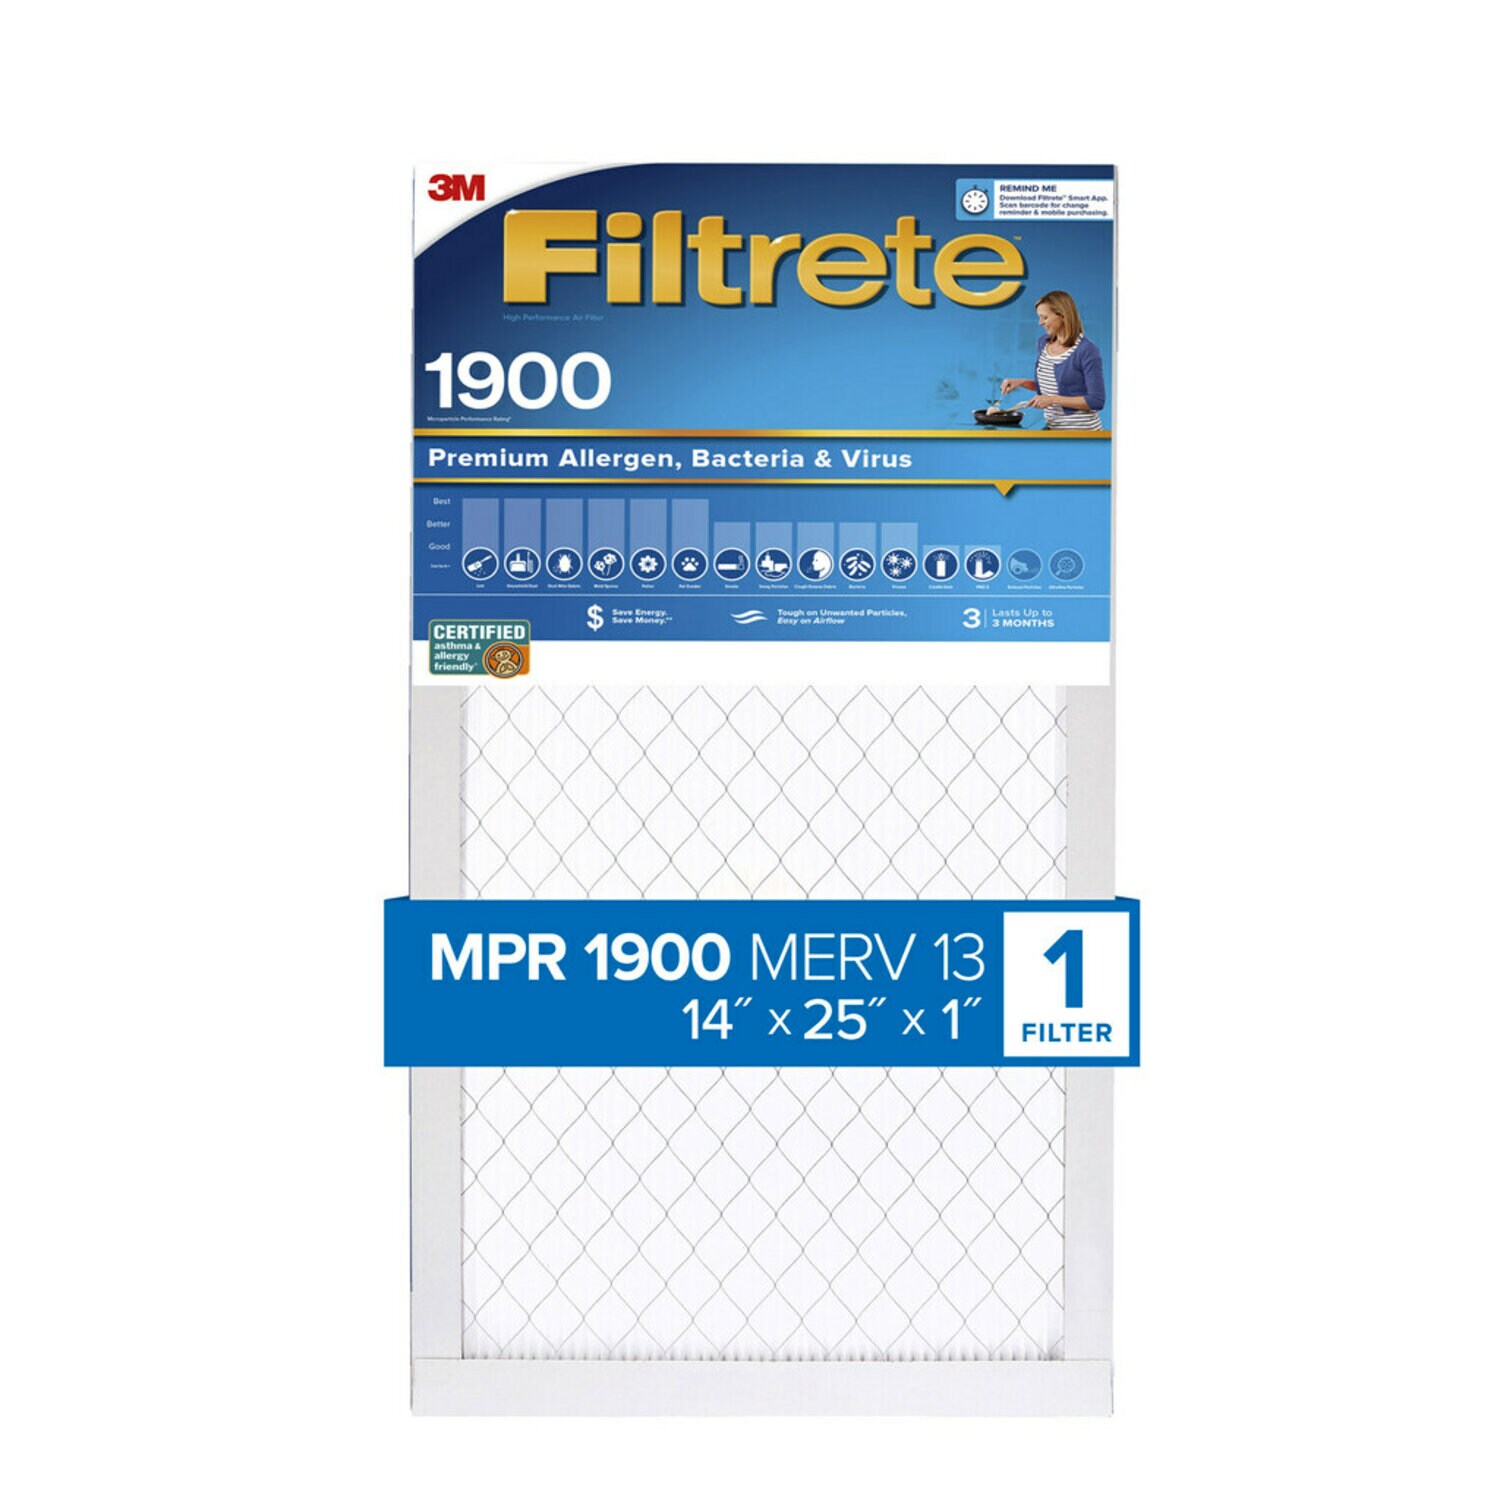 7100222946 - Filtrete High Performance Air Filter 1900 MPR UA04-4, 14 in x 25 in x 1 in (35.5 cm x 63.5 cm x 2.5 cm)